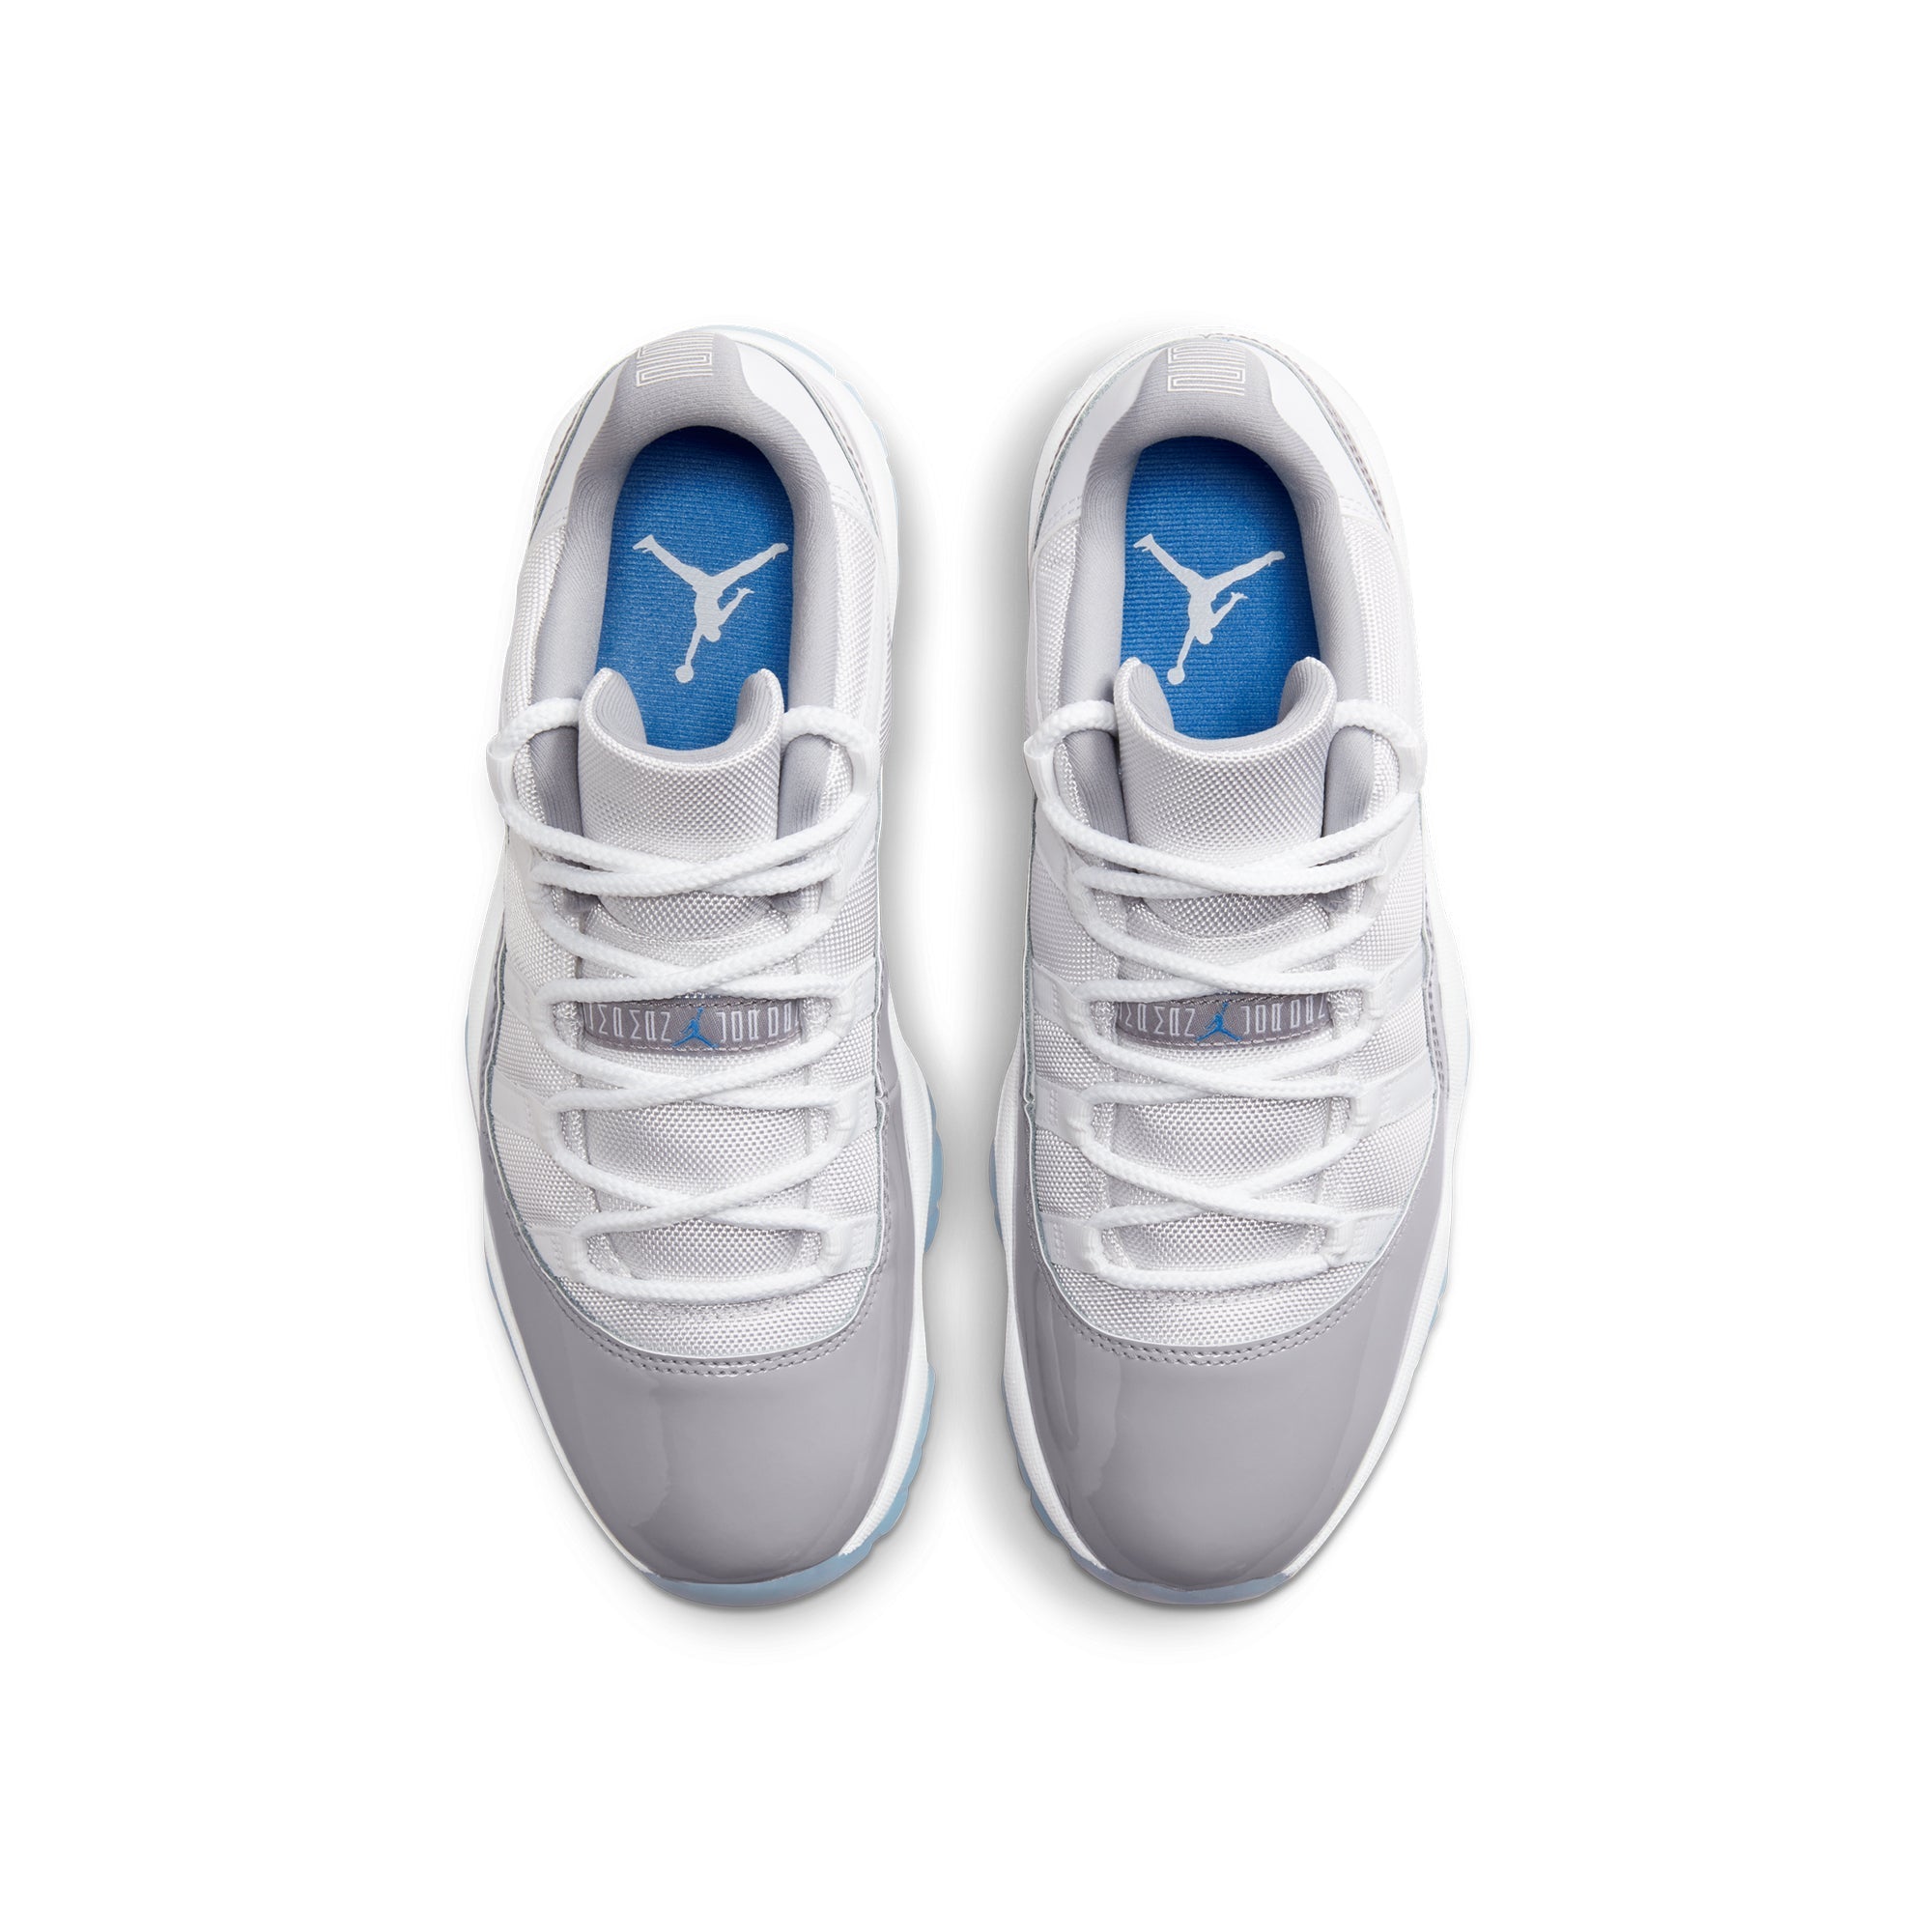 Air Jordan 11 Mens Retro Low Shoes - TJ Outlet